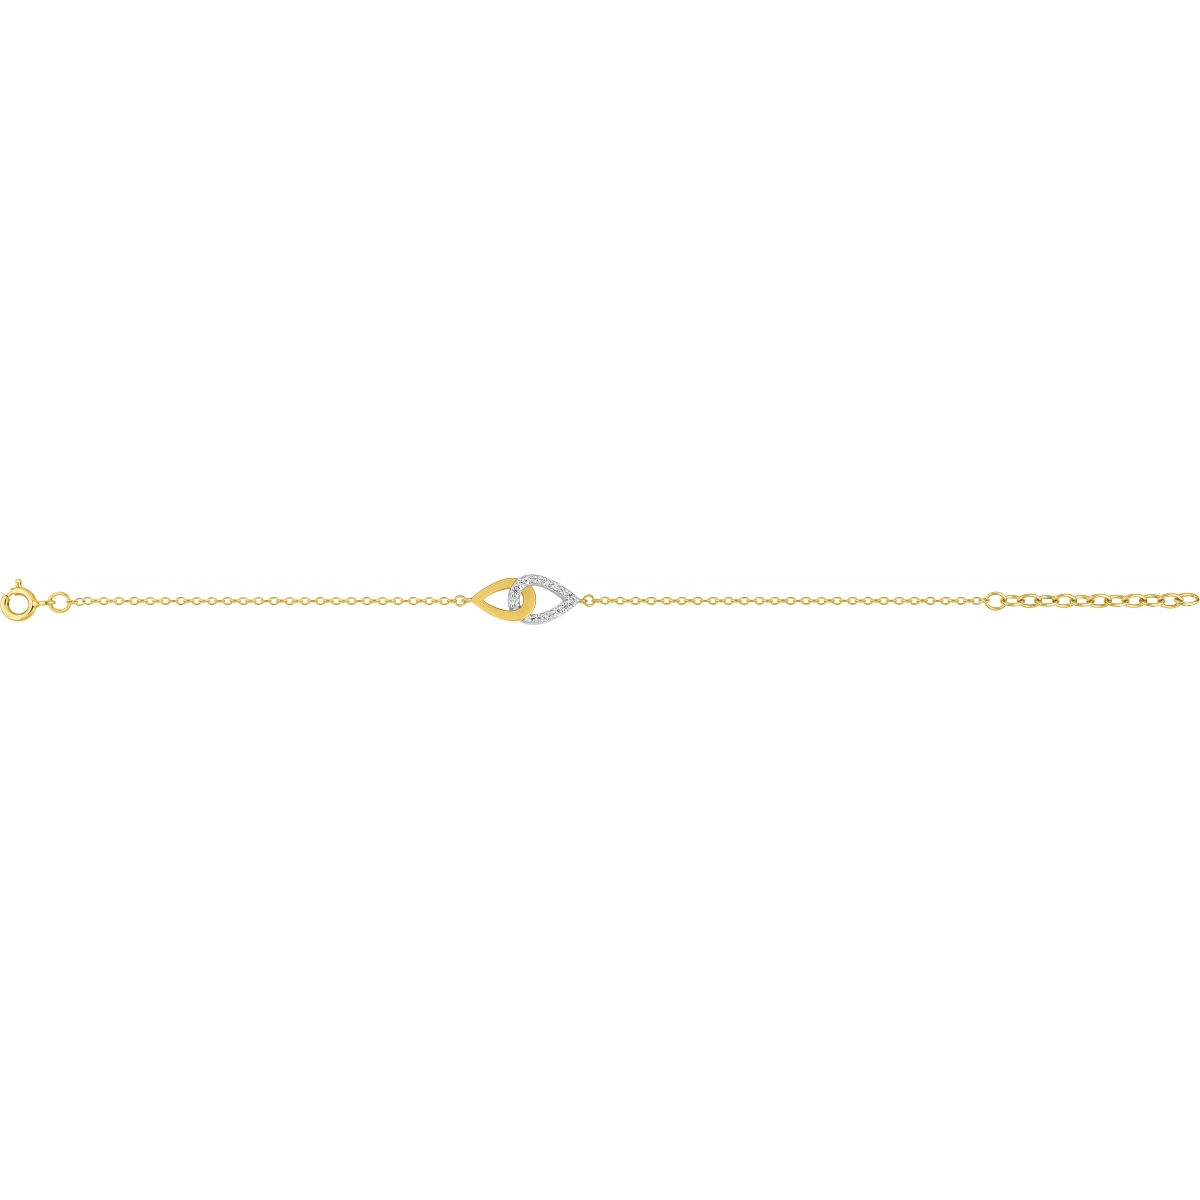 Bracelet 18cm w. cz gold plated Brass 2TG  Lua Blanca  BSBL53Z18.0